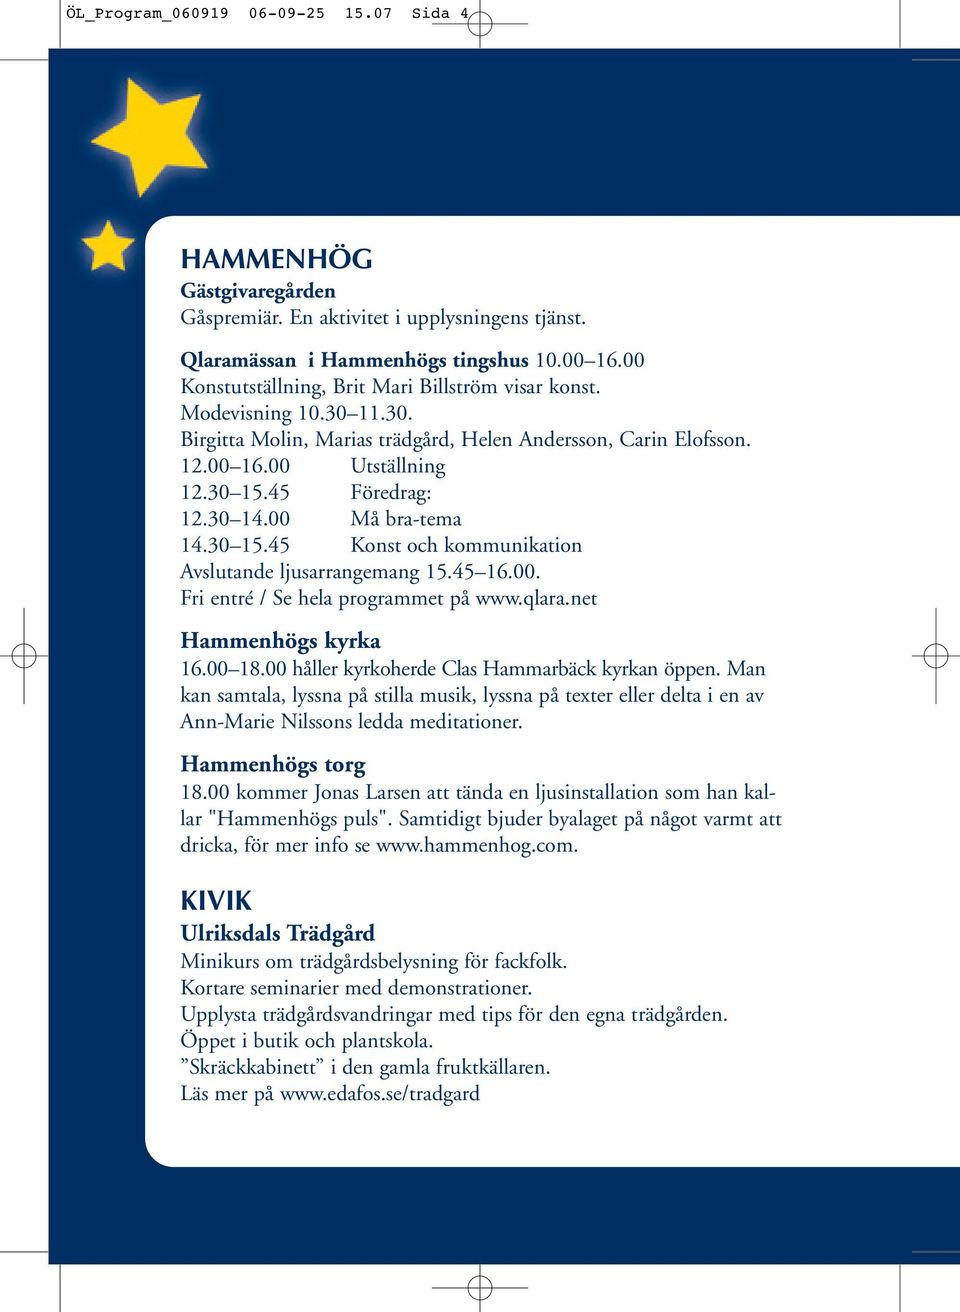 00 Må bra-tema 14.30 15.45 Konst och kommunikation Avslutande ljusarrangemang 15.45 16.00. Fri entré / Se hela programmet på www.qlara.net Hammenhögs kyrka 16.00 18.